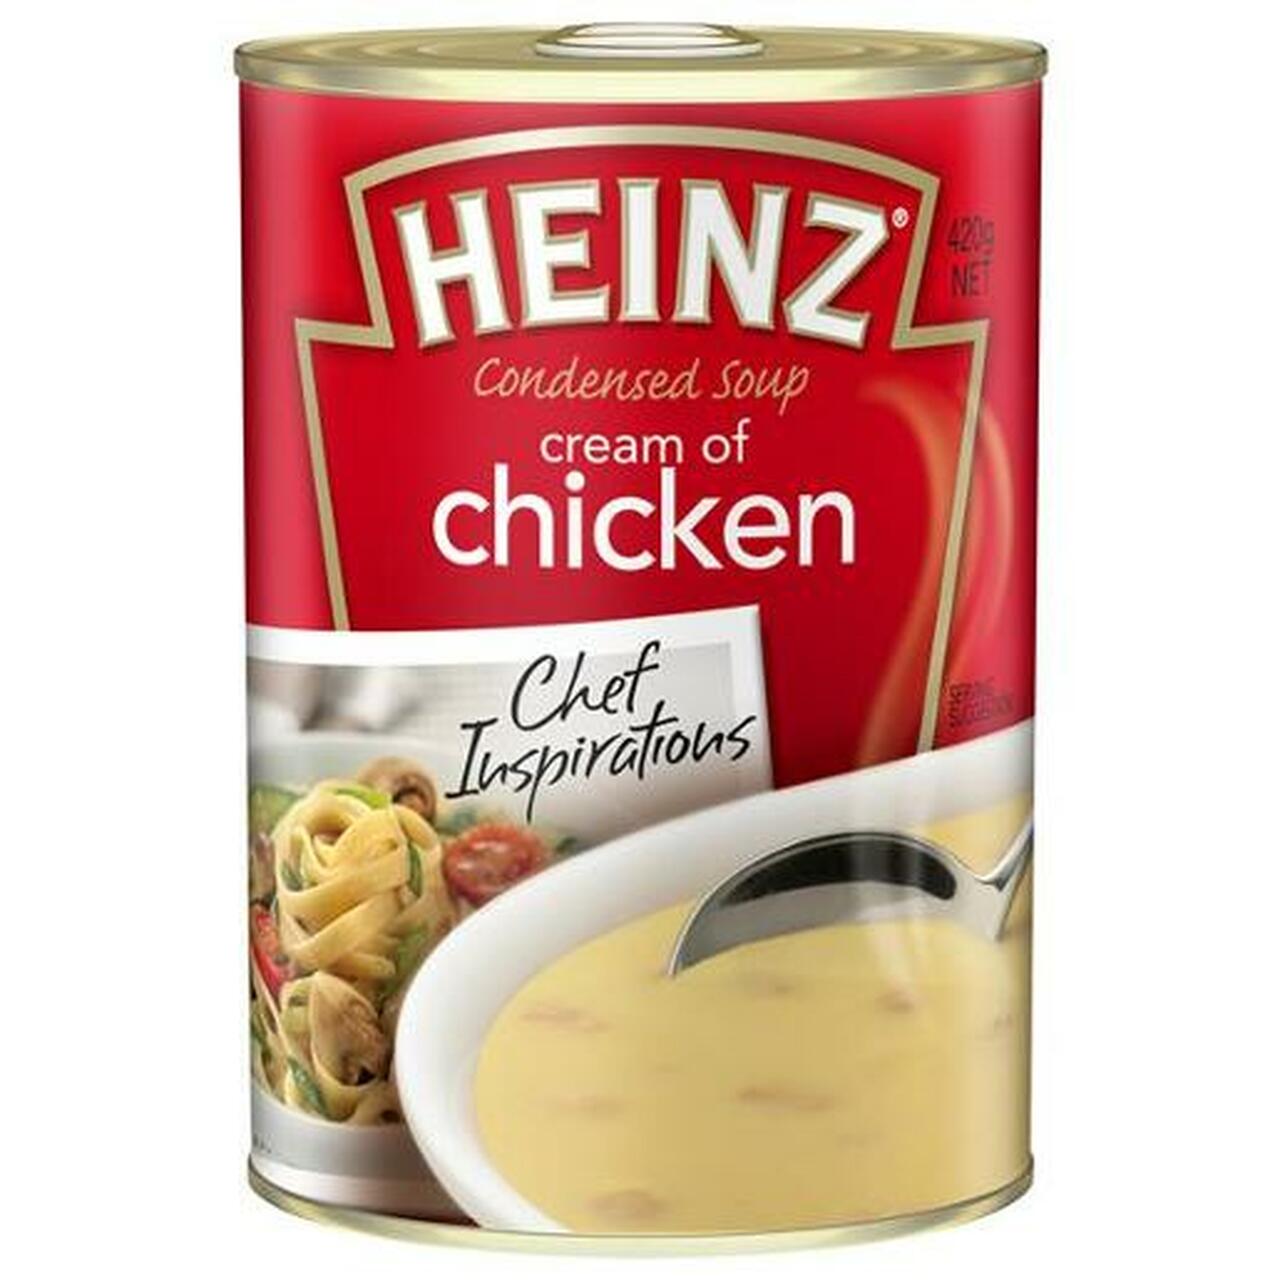 Heinz Condensed Chicken Soup 420g.